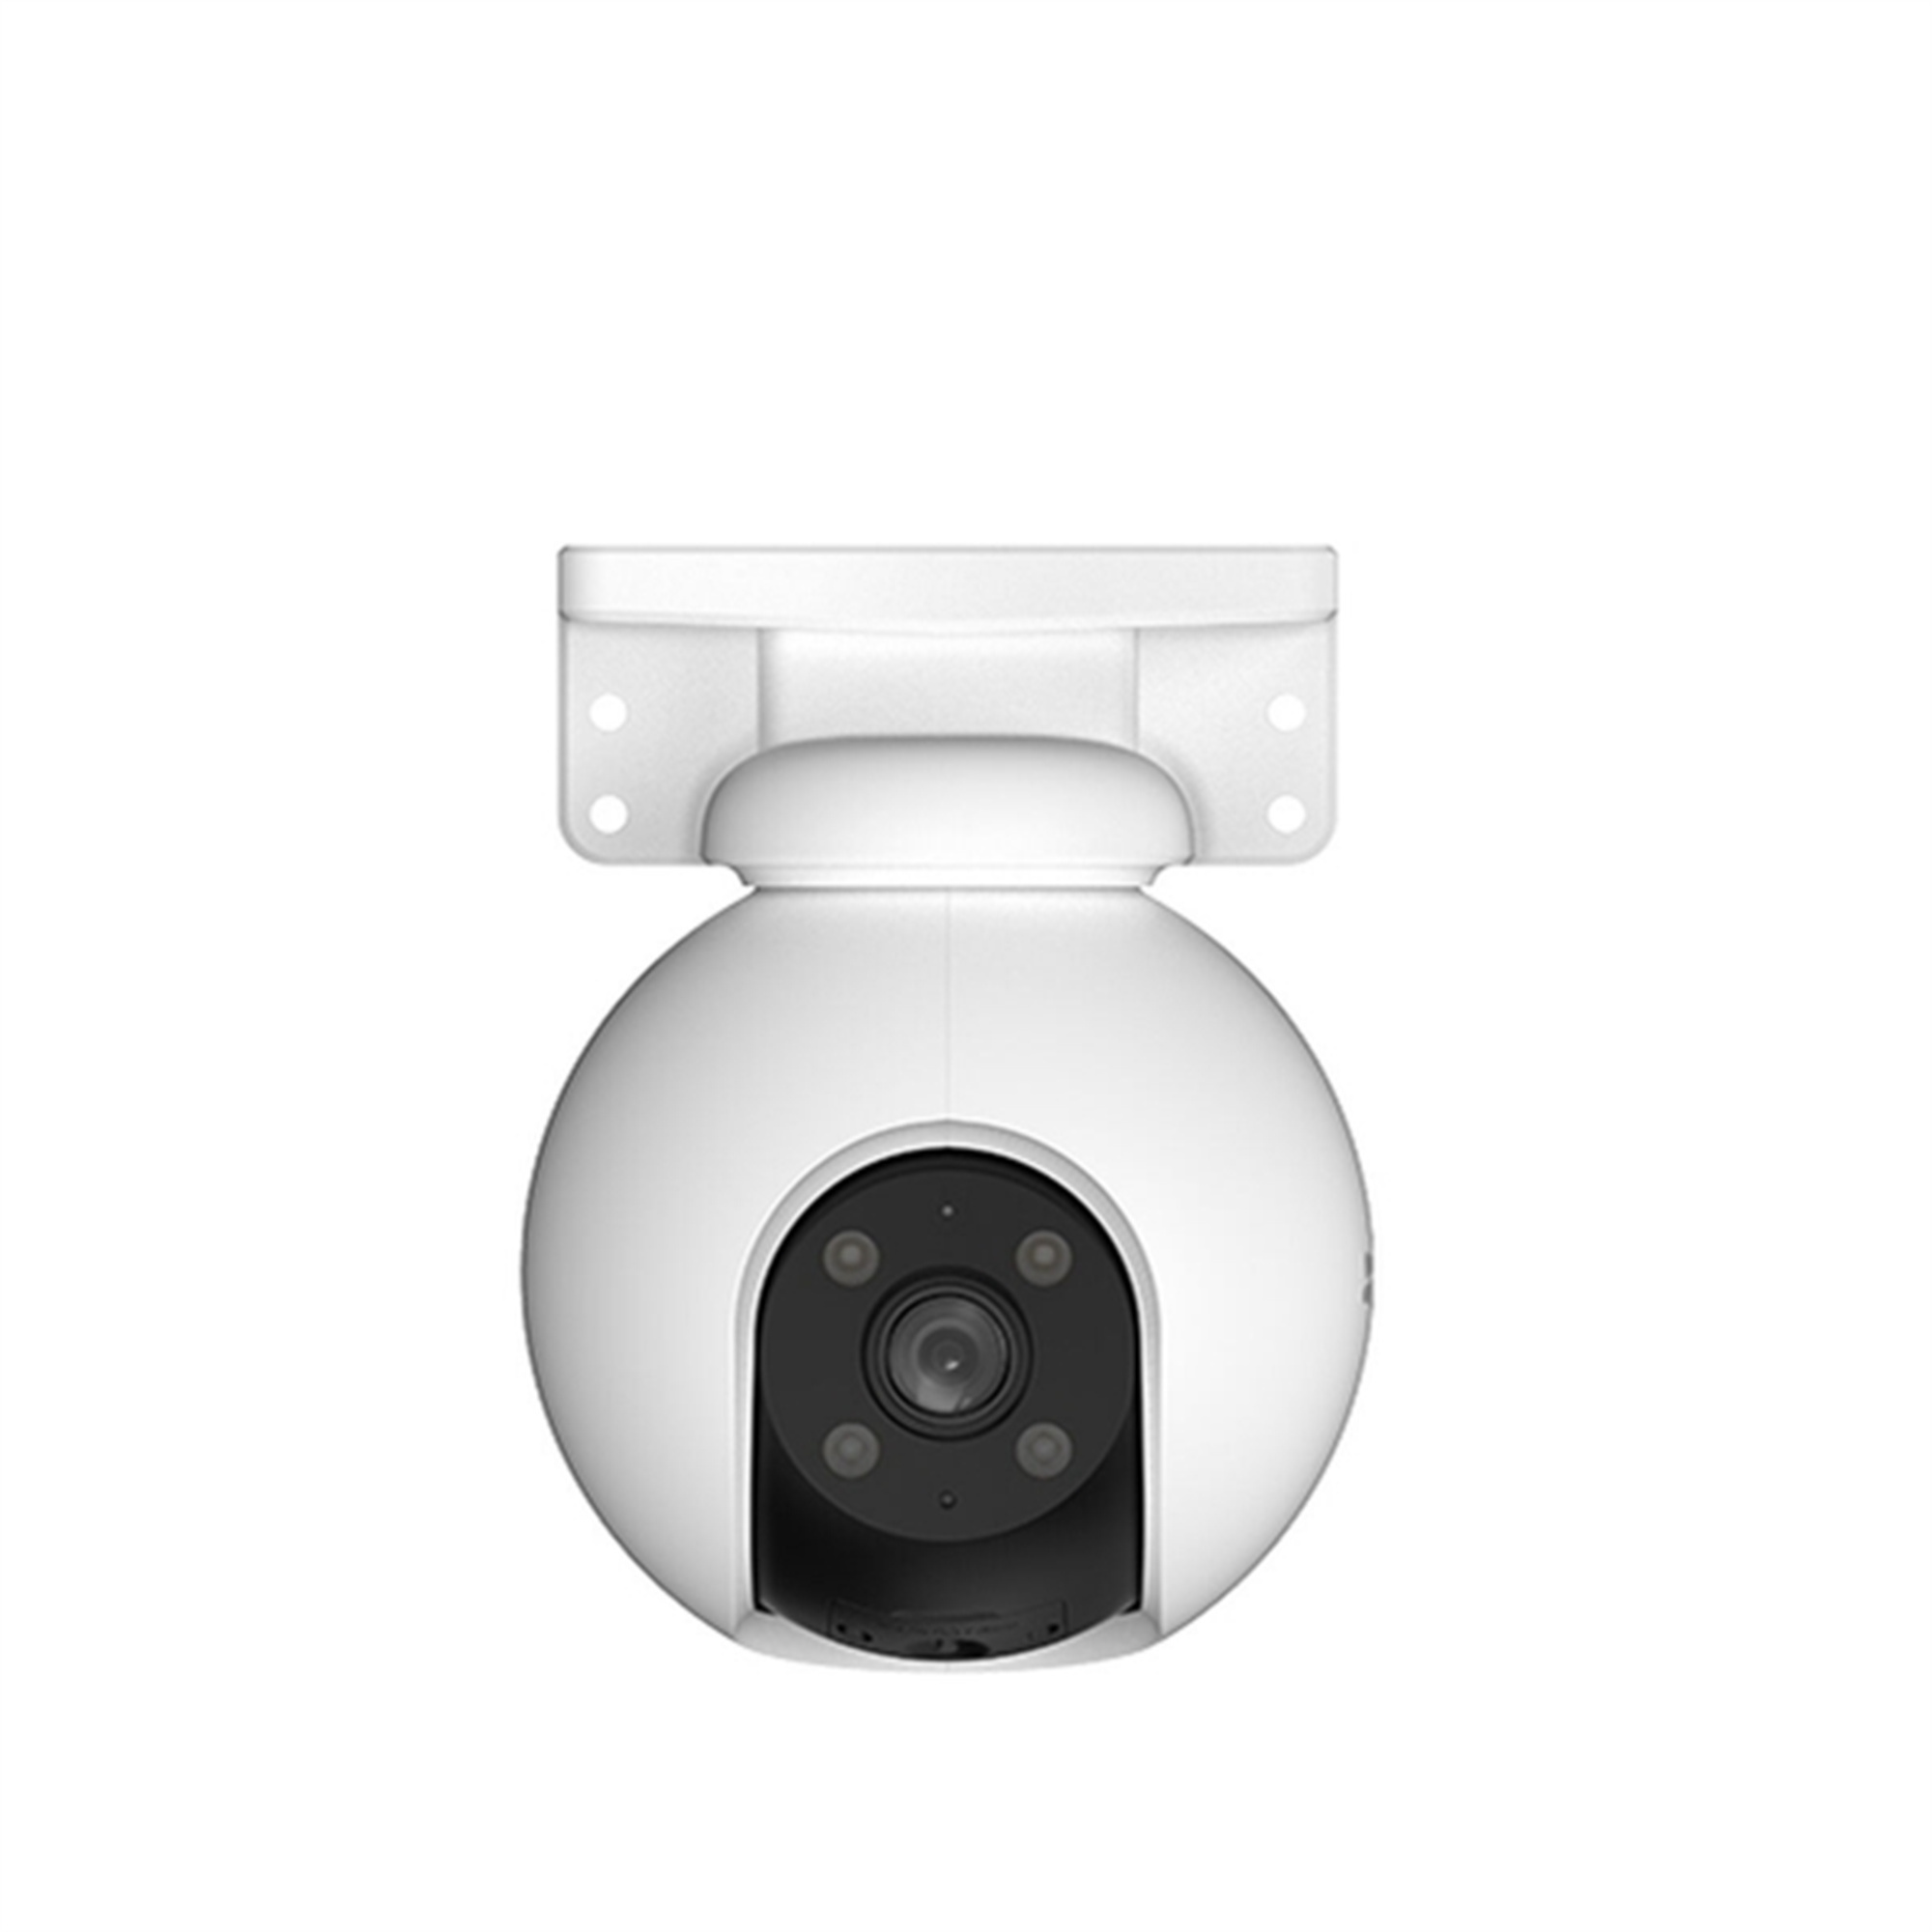 DOTMALL S9137557, Überwachungskamera, Auflösung Video: Pixel 2304 x 1296